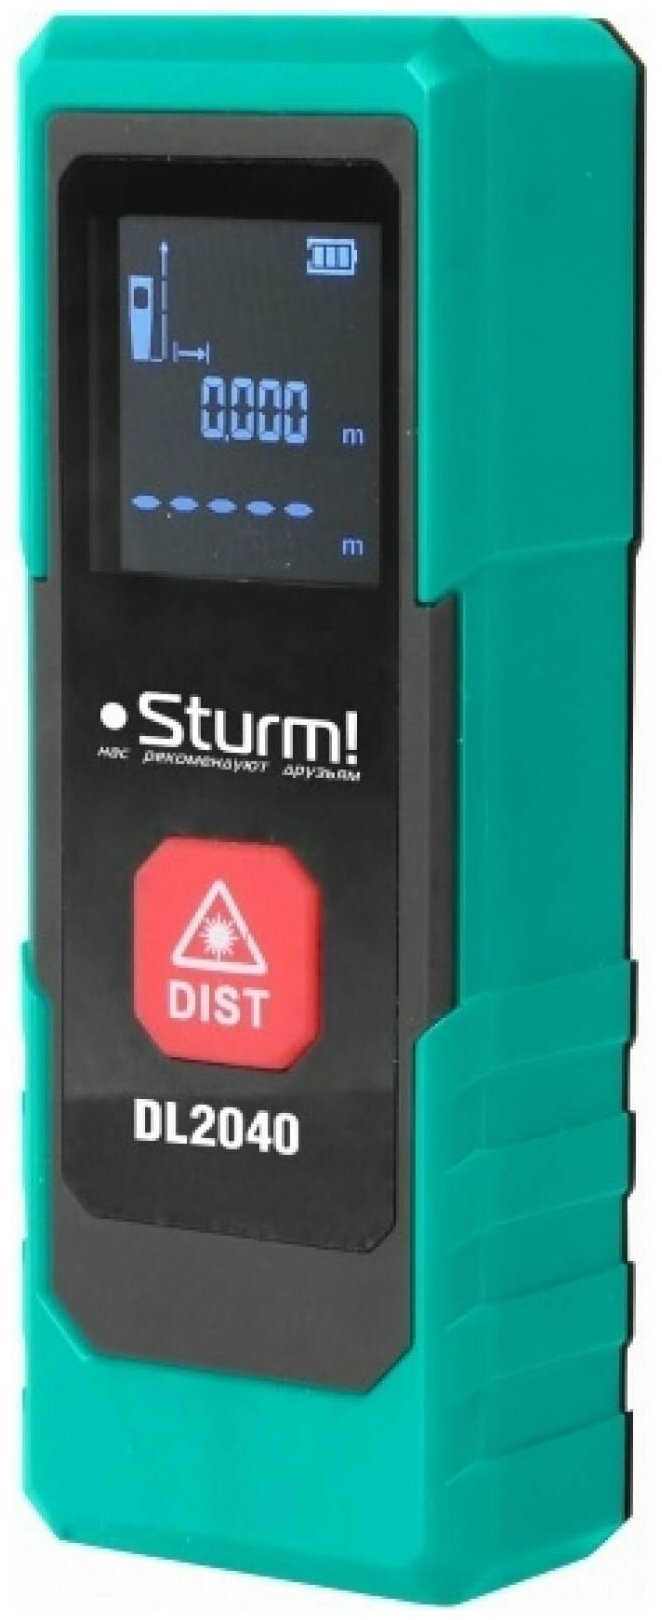 DL2040 Дальномер лазерный,0,05-40м,на 40% компактнее, только измерение расстояния,чехол, Sturm!